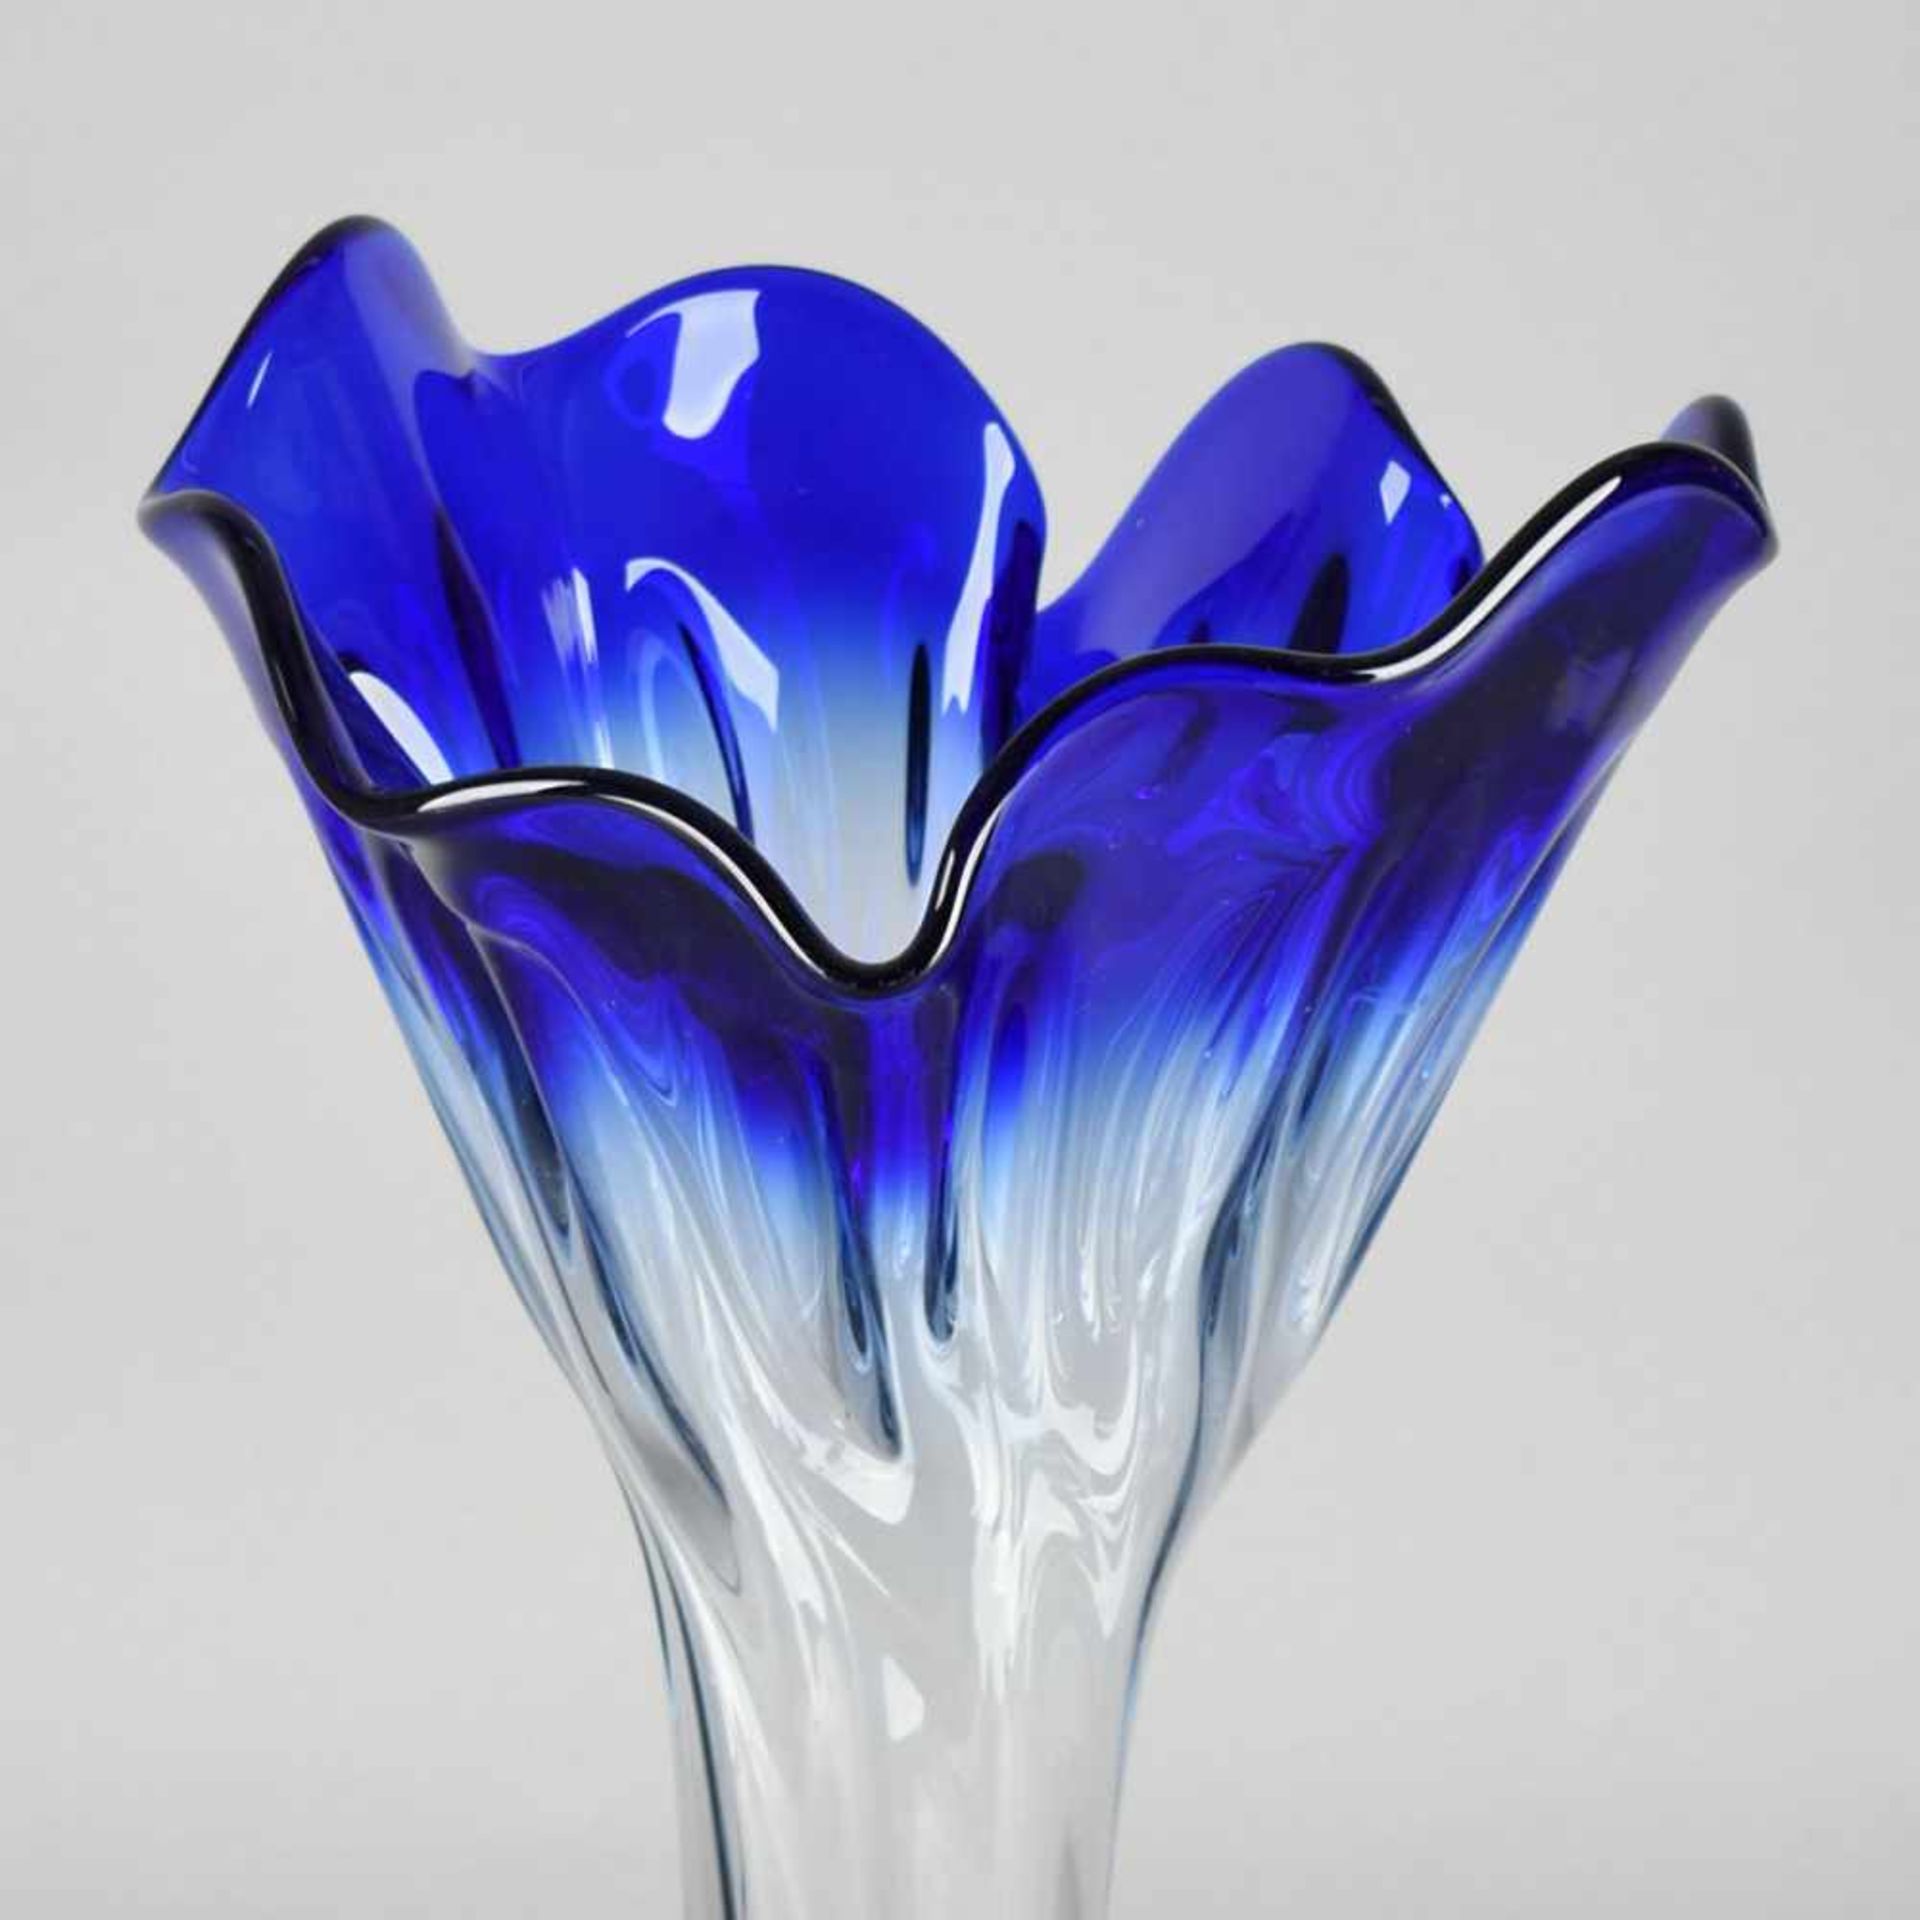 Große Vase farbloses Glas im Farbverlauf nach Blau, schwere Qualität, über ausgestelltem Stand